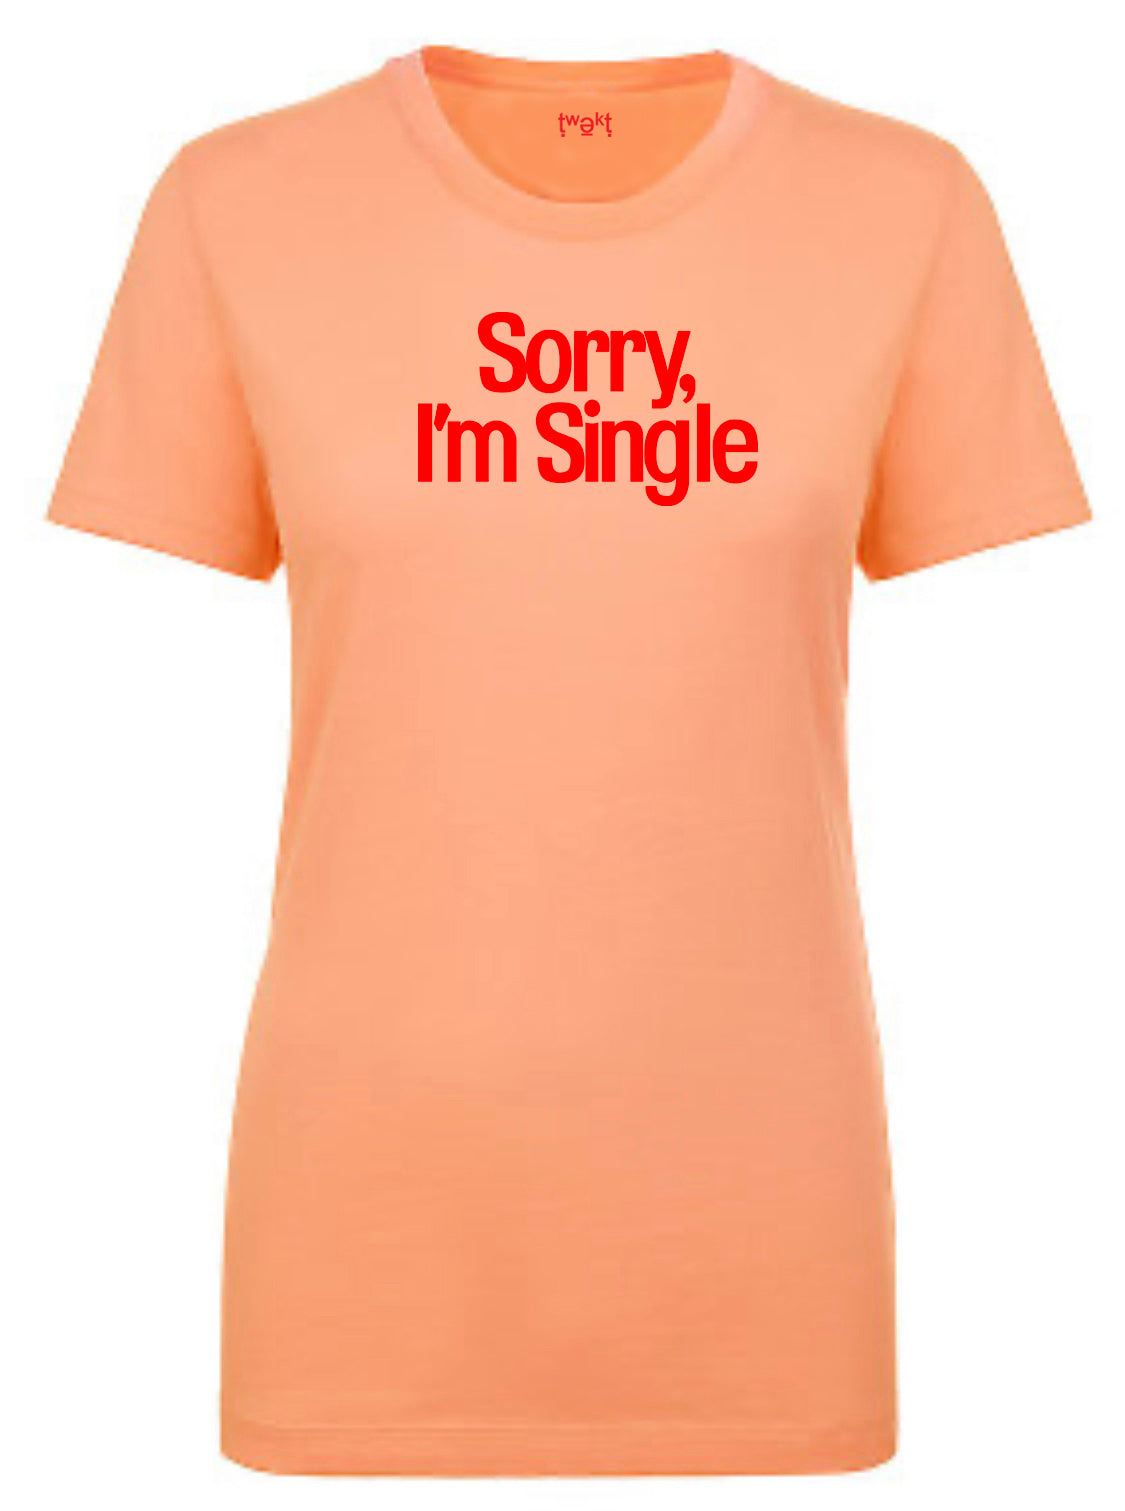 Sorry Single Women T-shirt